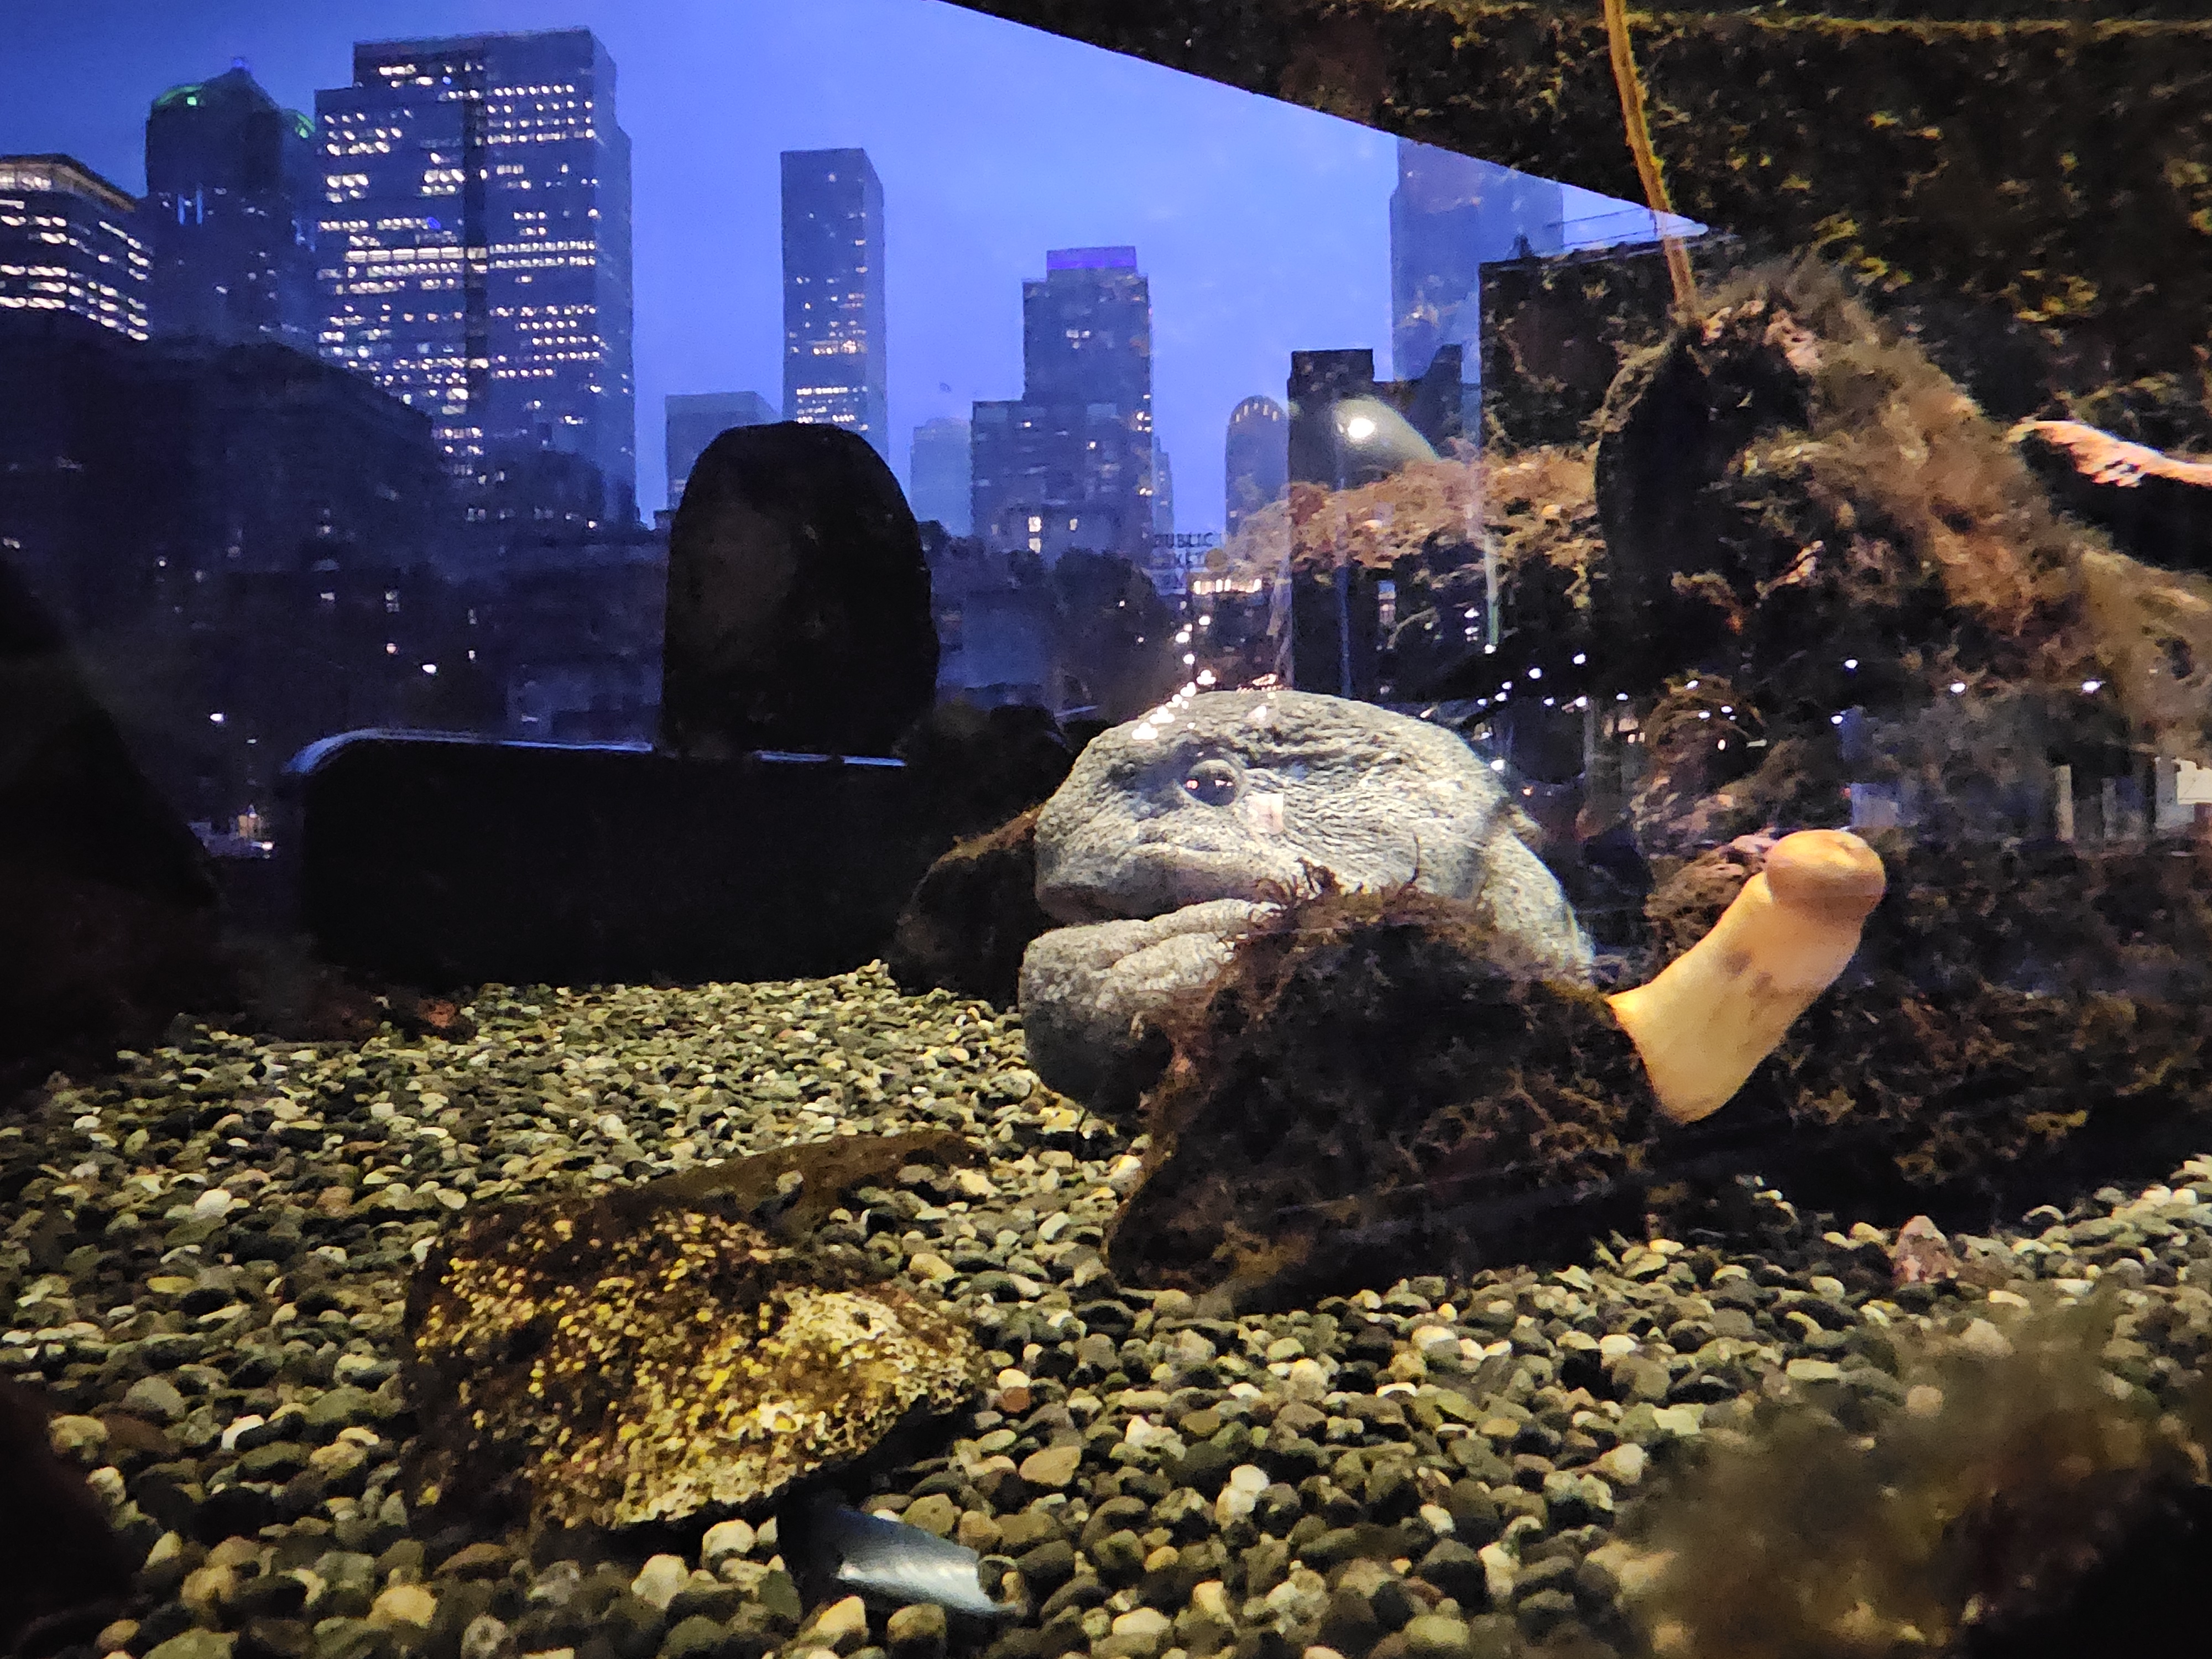 Held in Seattle Aquarium Tank, Pier 59.